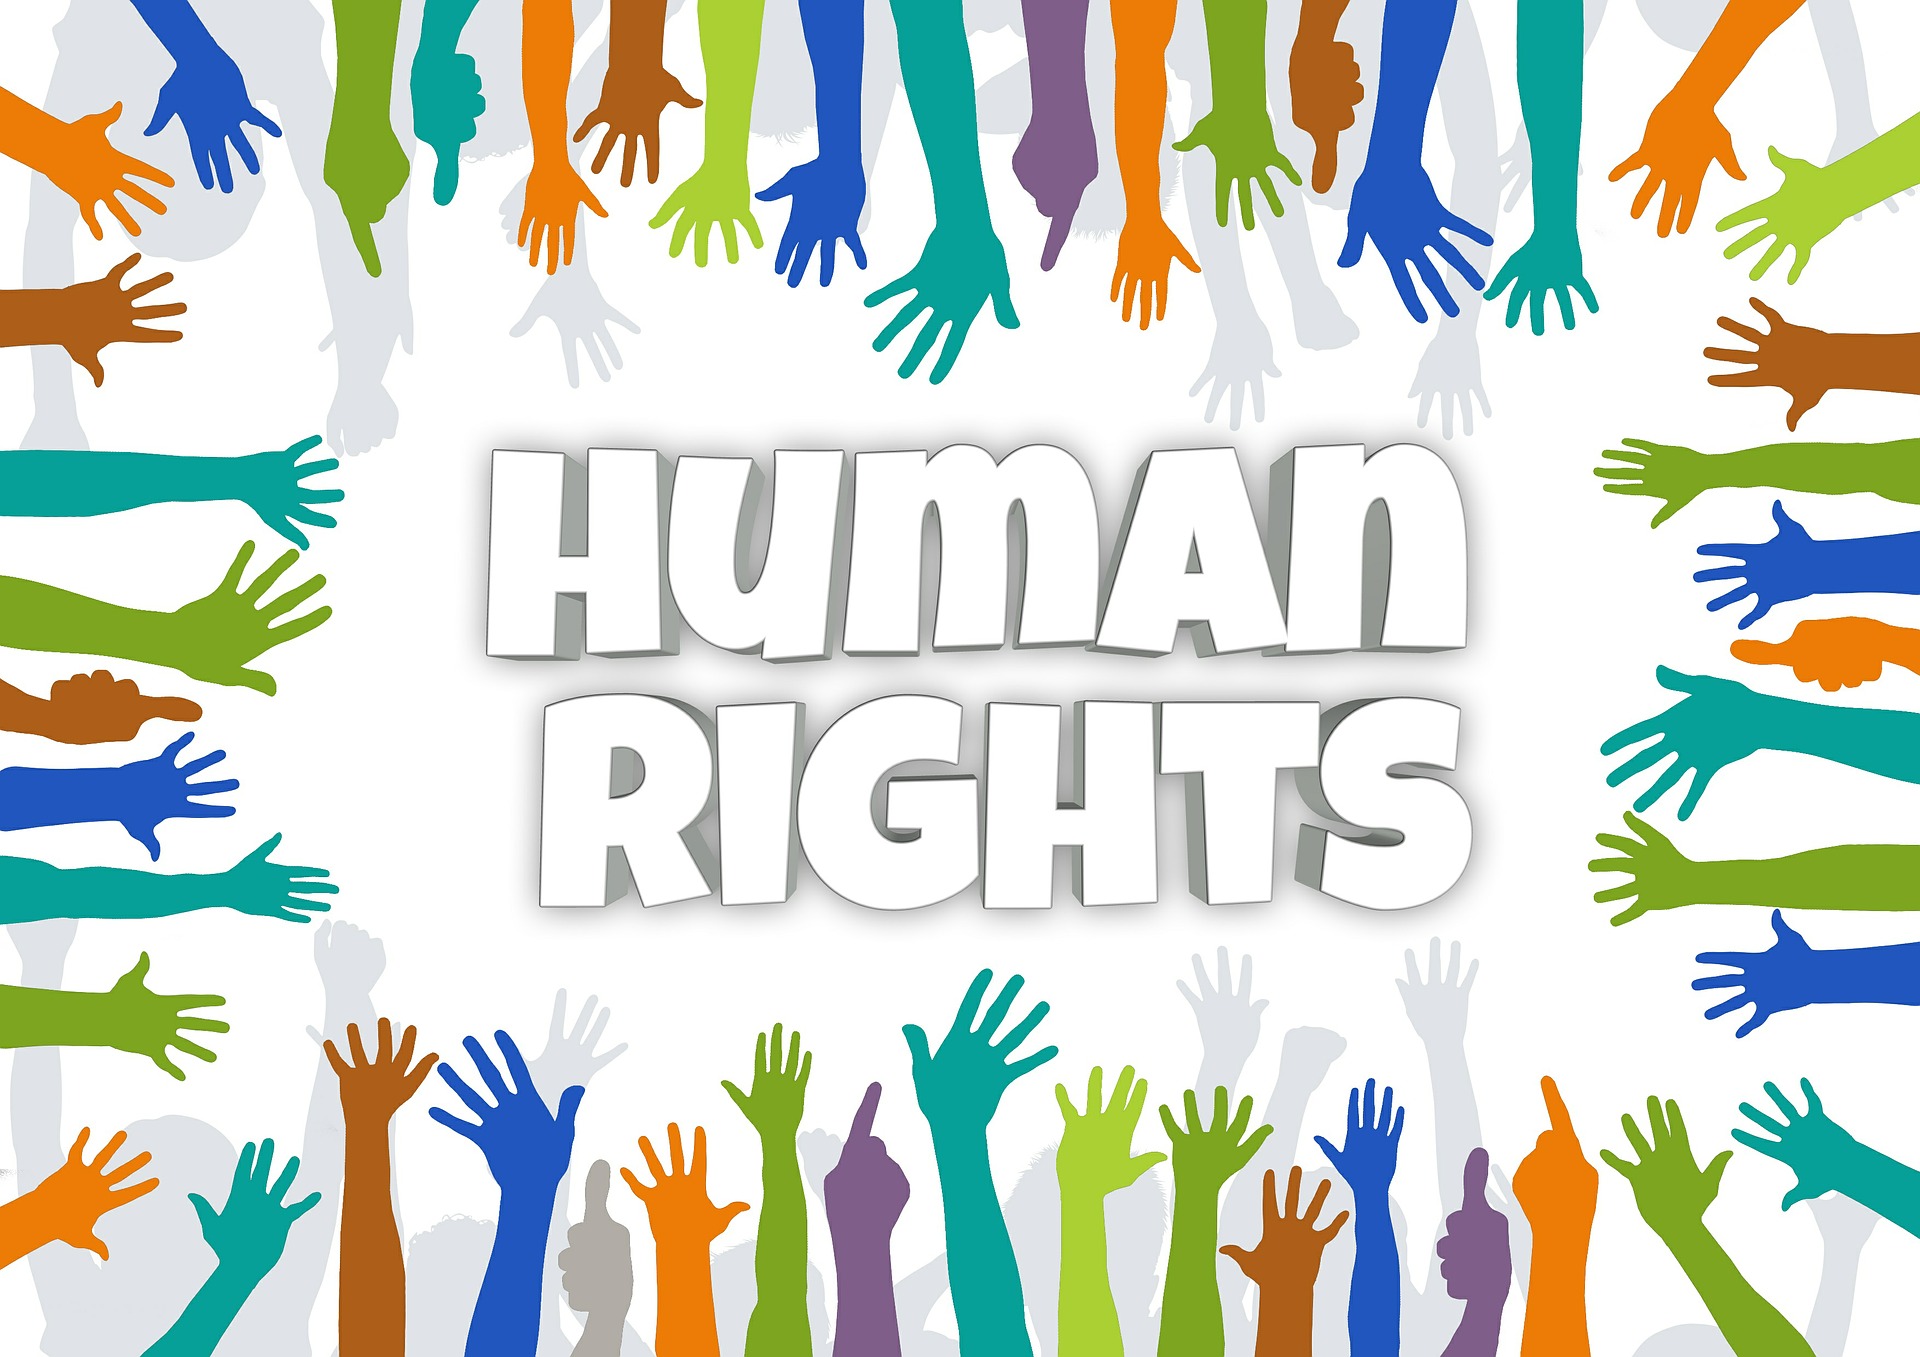 Bądźmy Przedstawicielami Zmiany - wzory do naśladowania w obronie praw człowieka